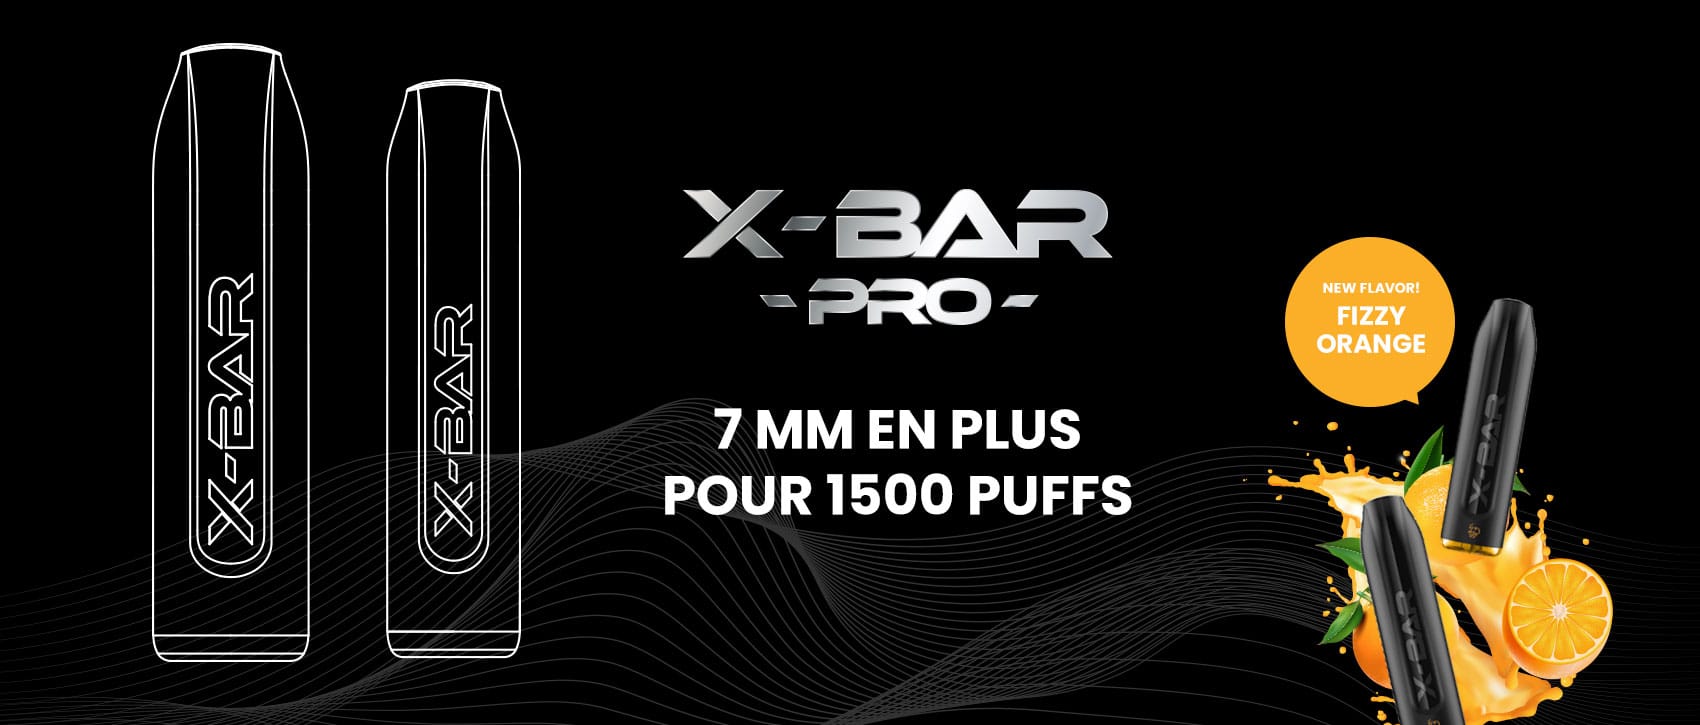 Image X-BAR Pro, 7 mm en plus pour 1500 puffs !